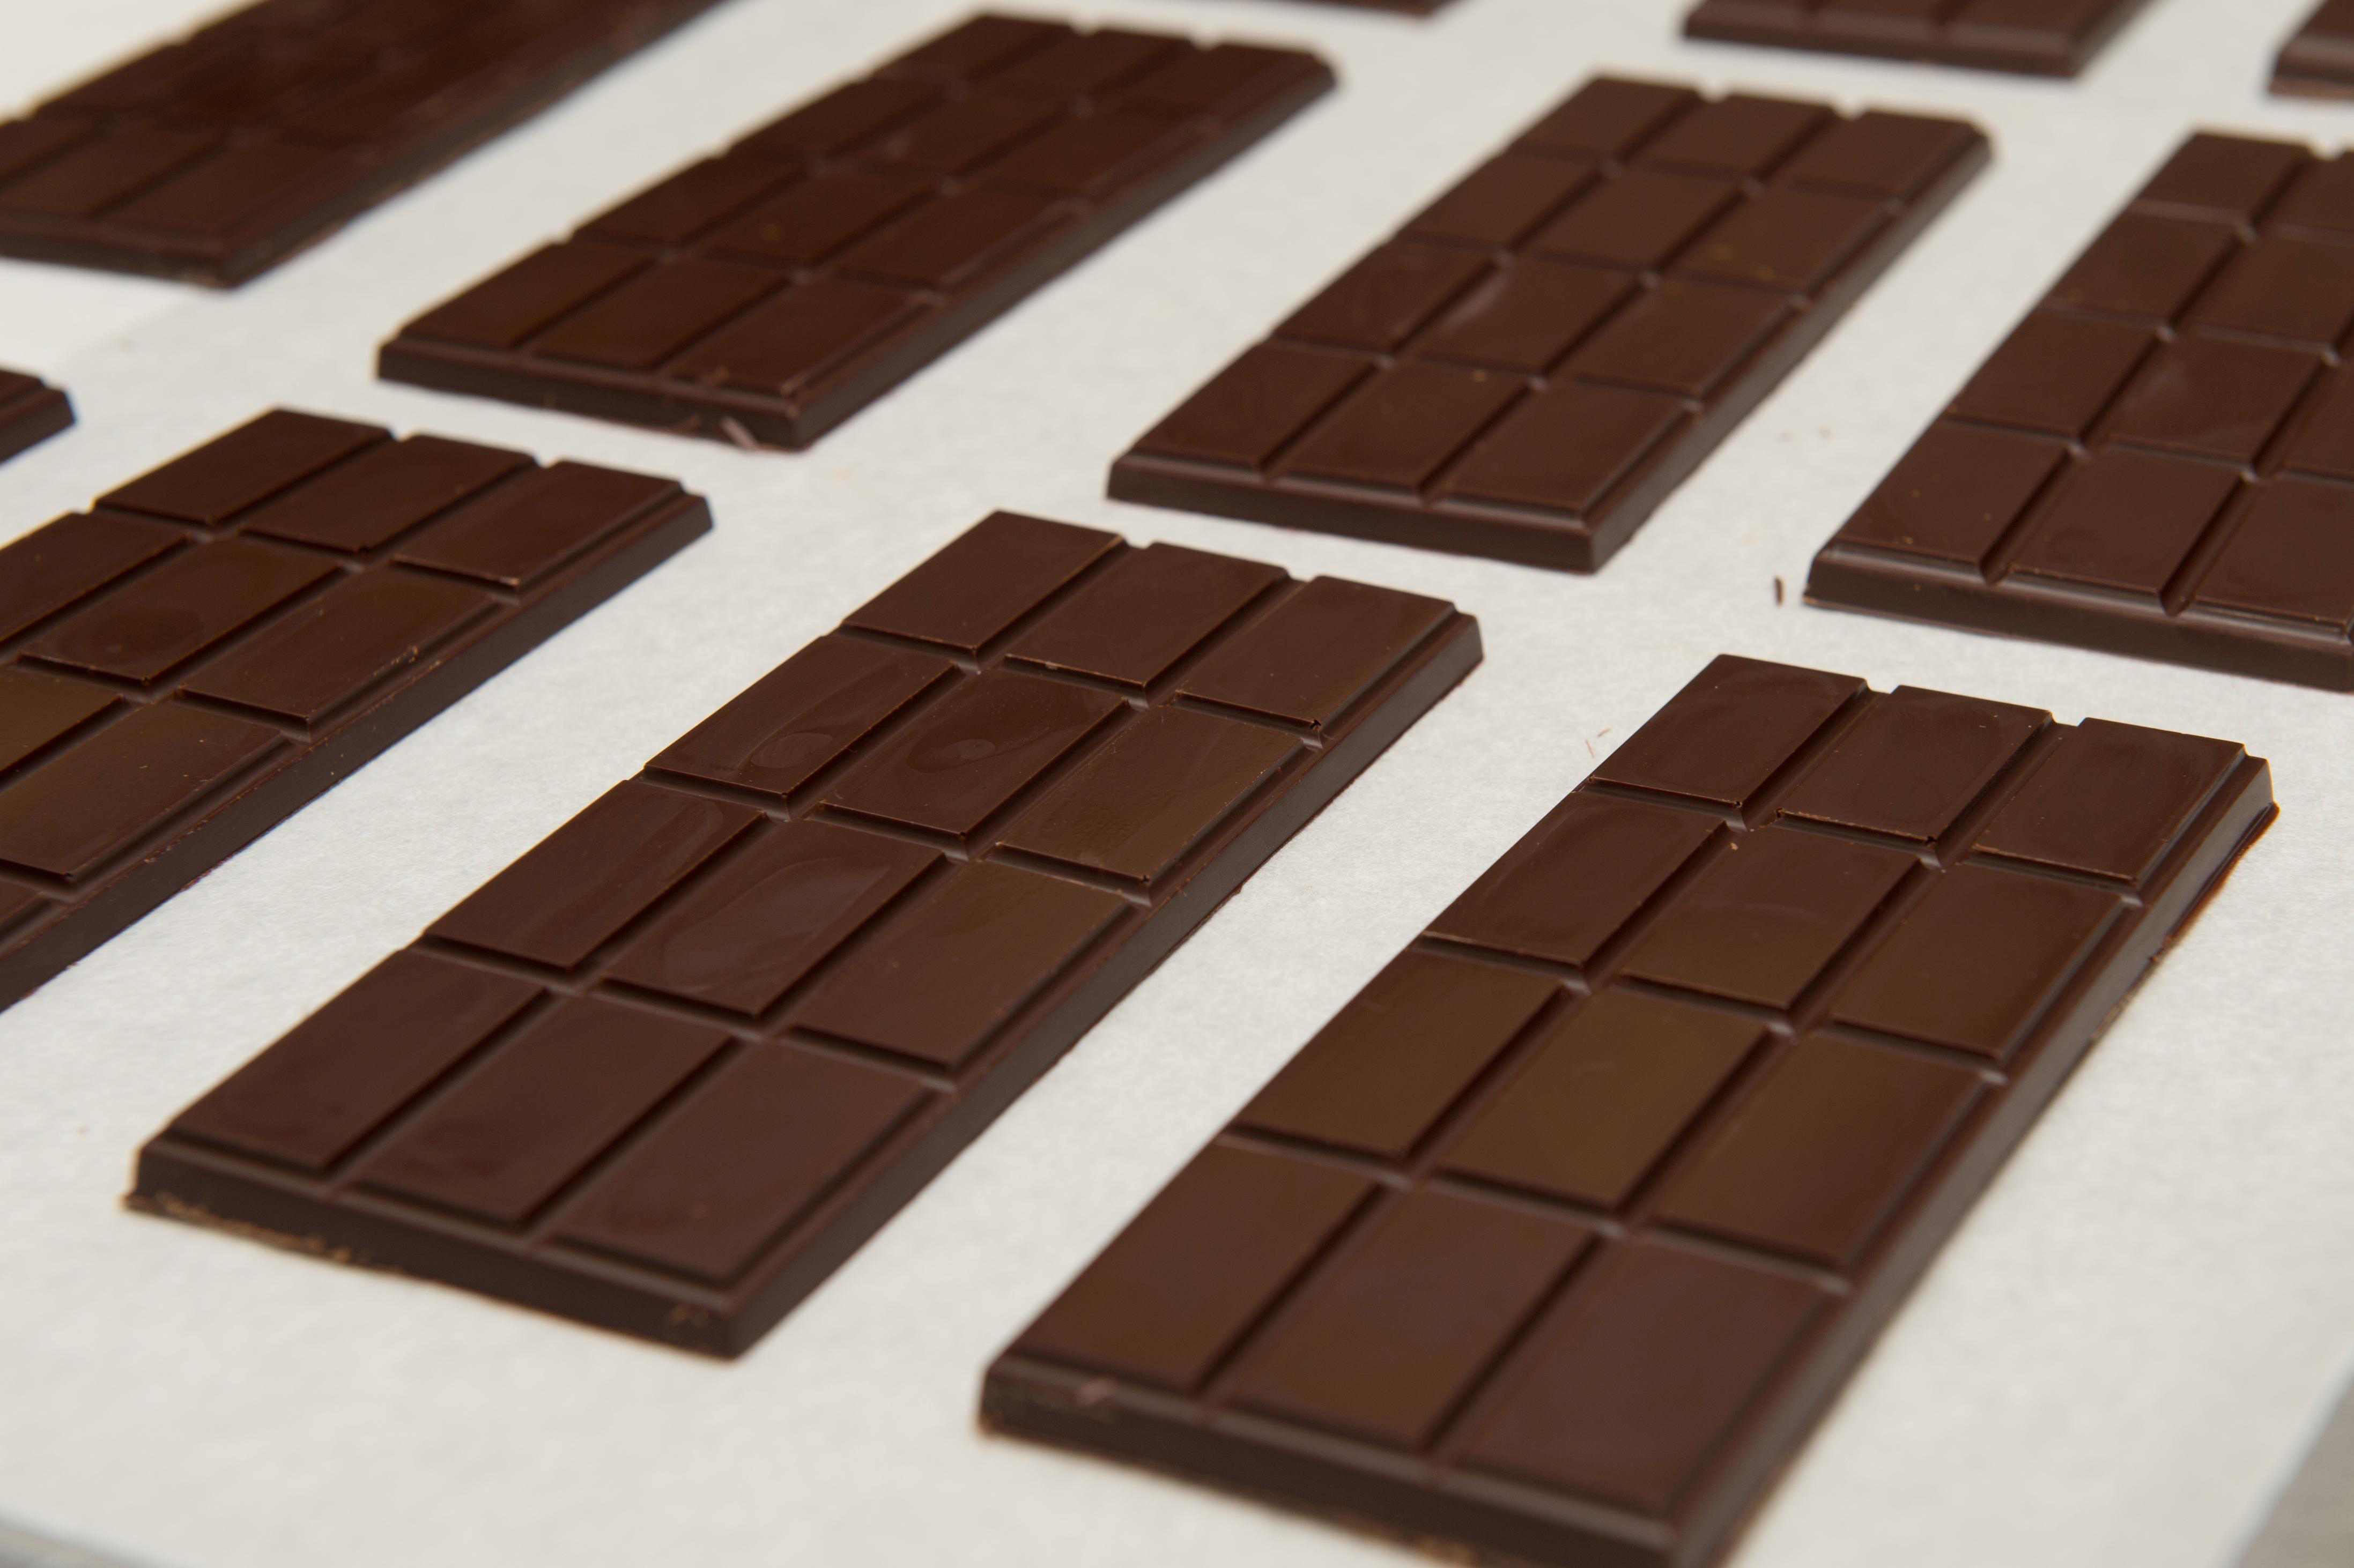 La investigación señaló que las personas, después de haber estado expuestas a un aroma de chocolate, eligieron bocadillos saludables 